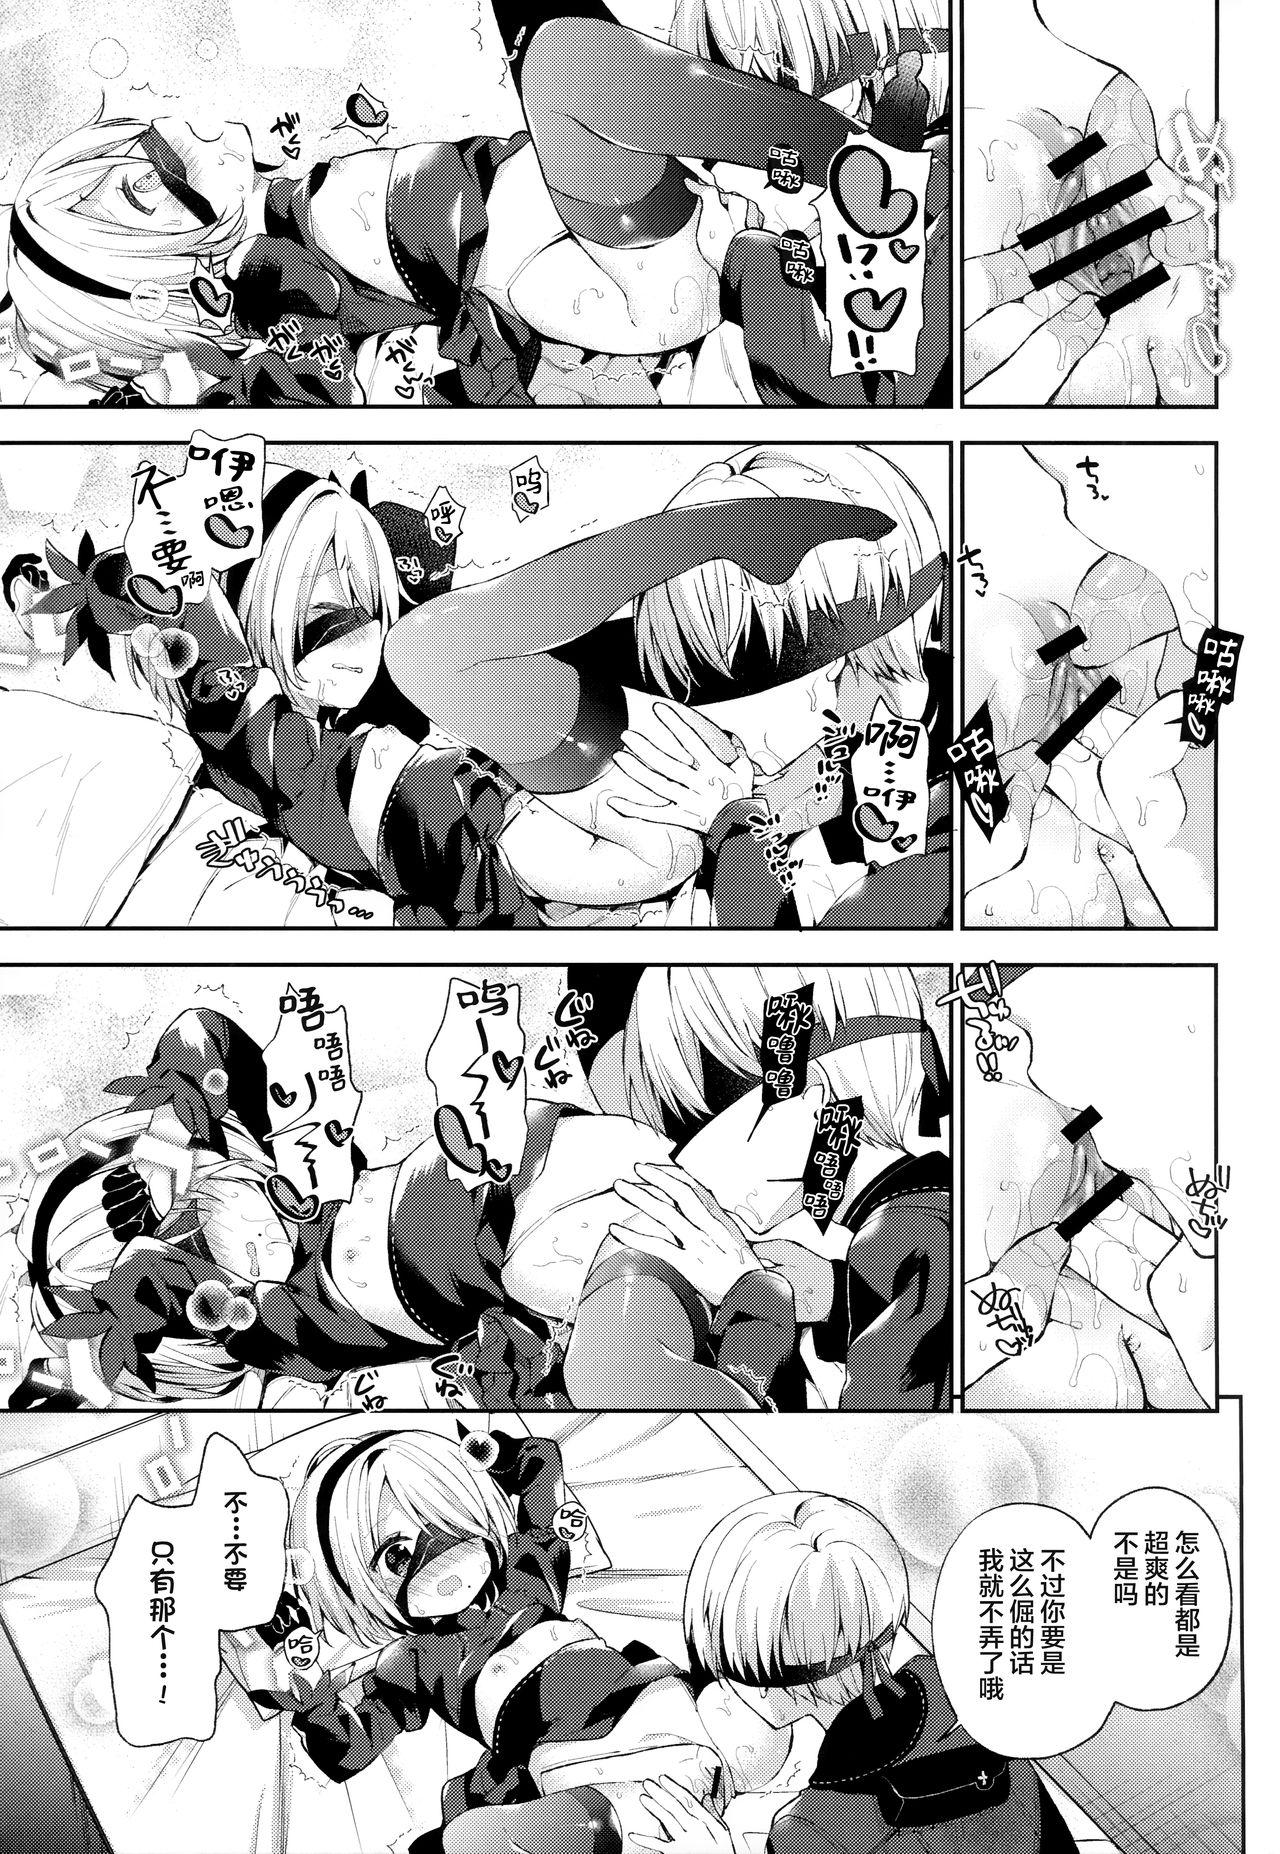 Passion YoRHa 2B-gata Shoushizai Kitai no Toriatsukaidoki ni Okeru Chuui Jikou Tsuutasu - Nier automata Shaved Pussy - Page 9